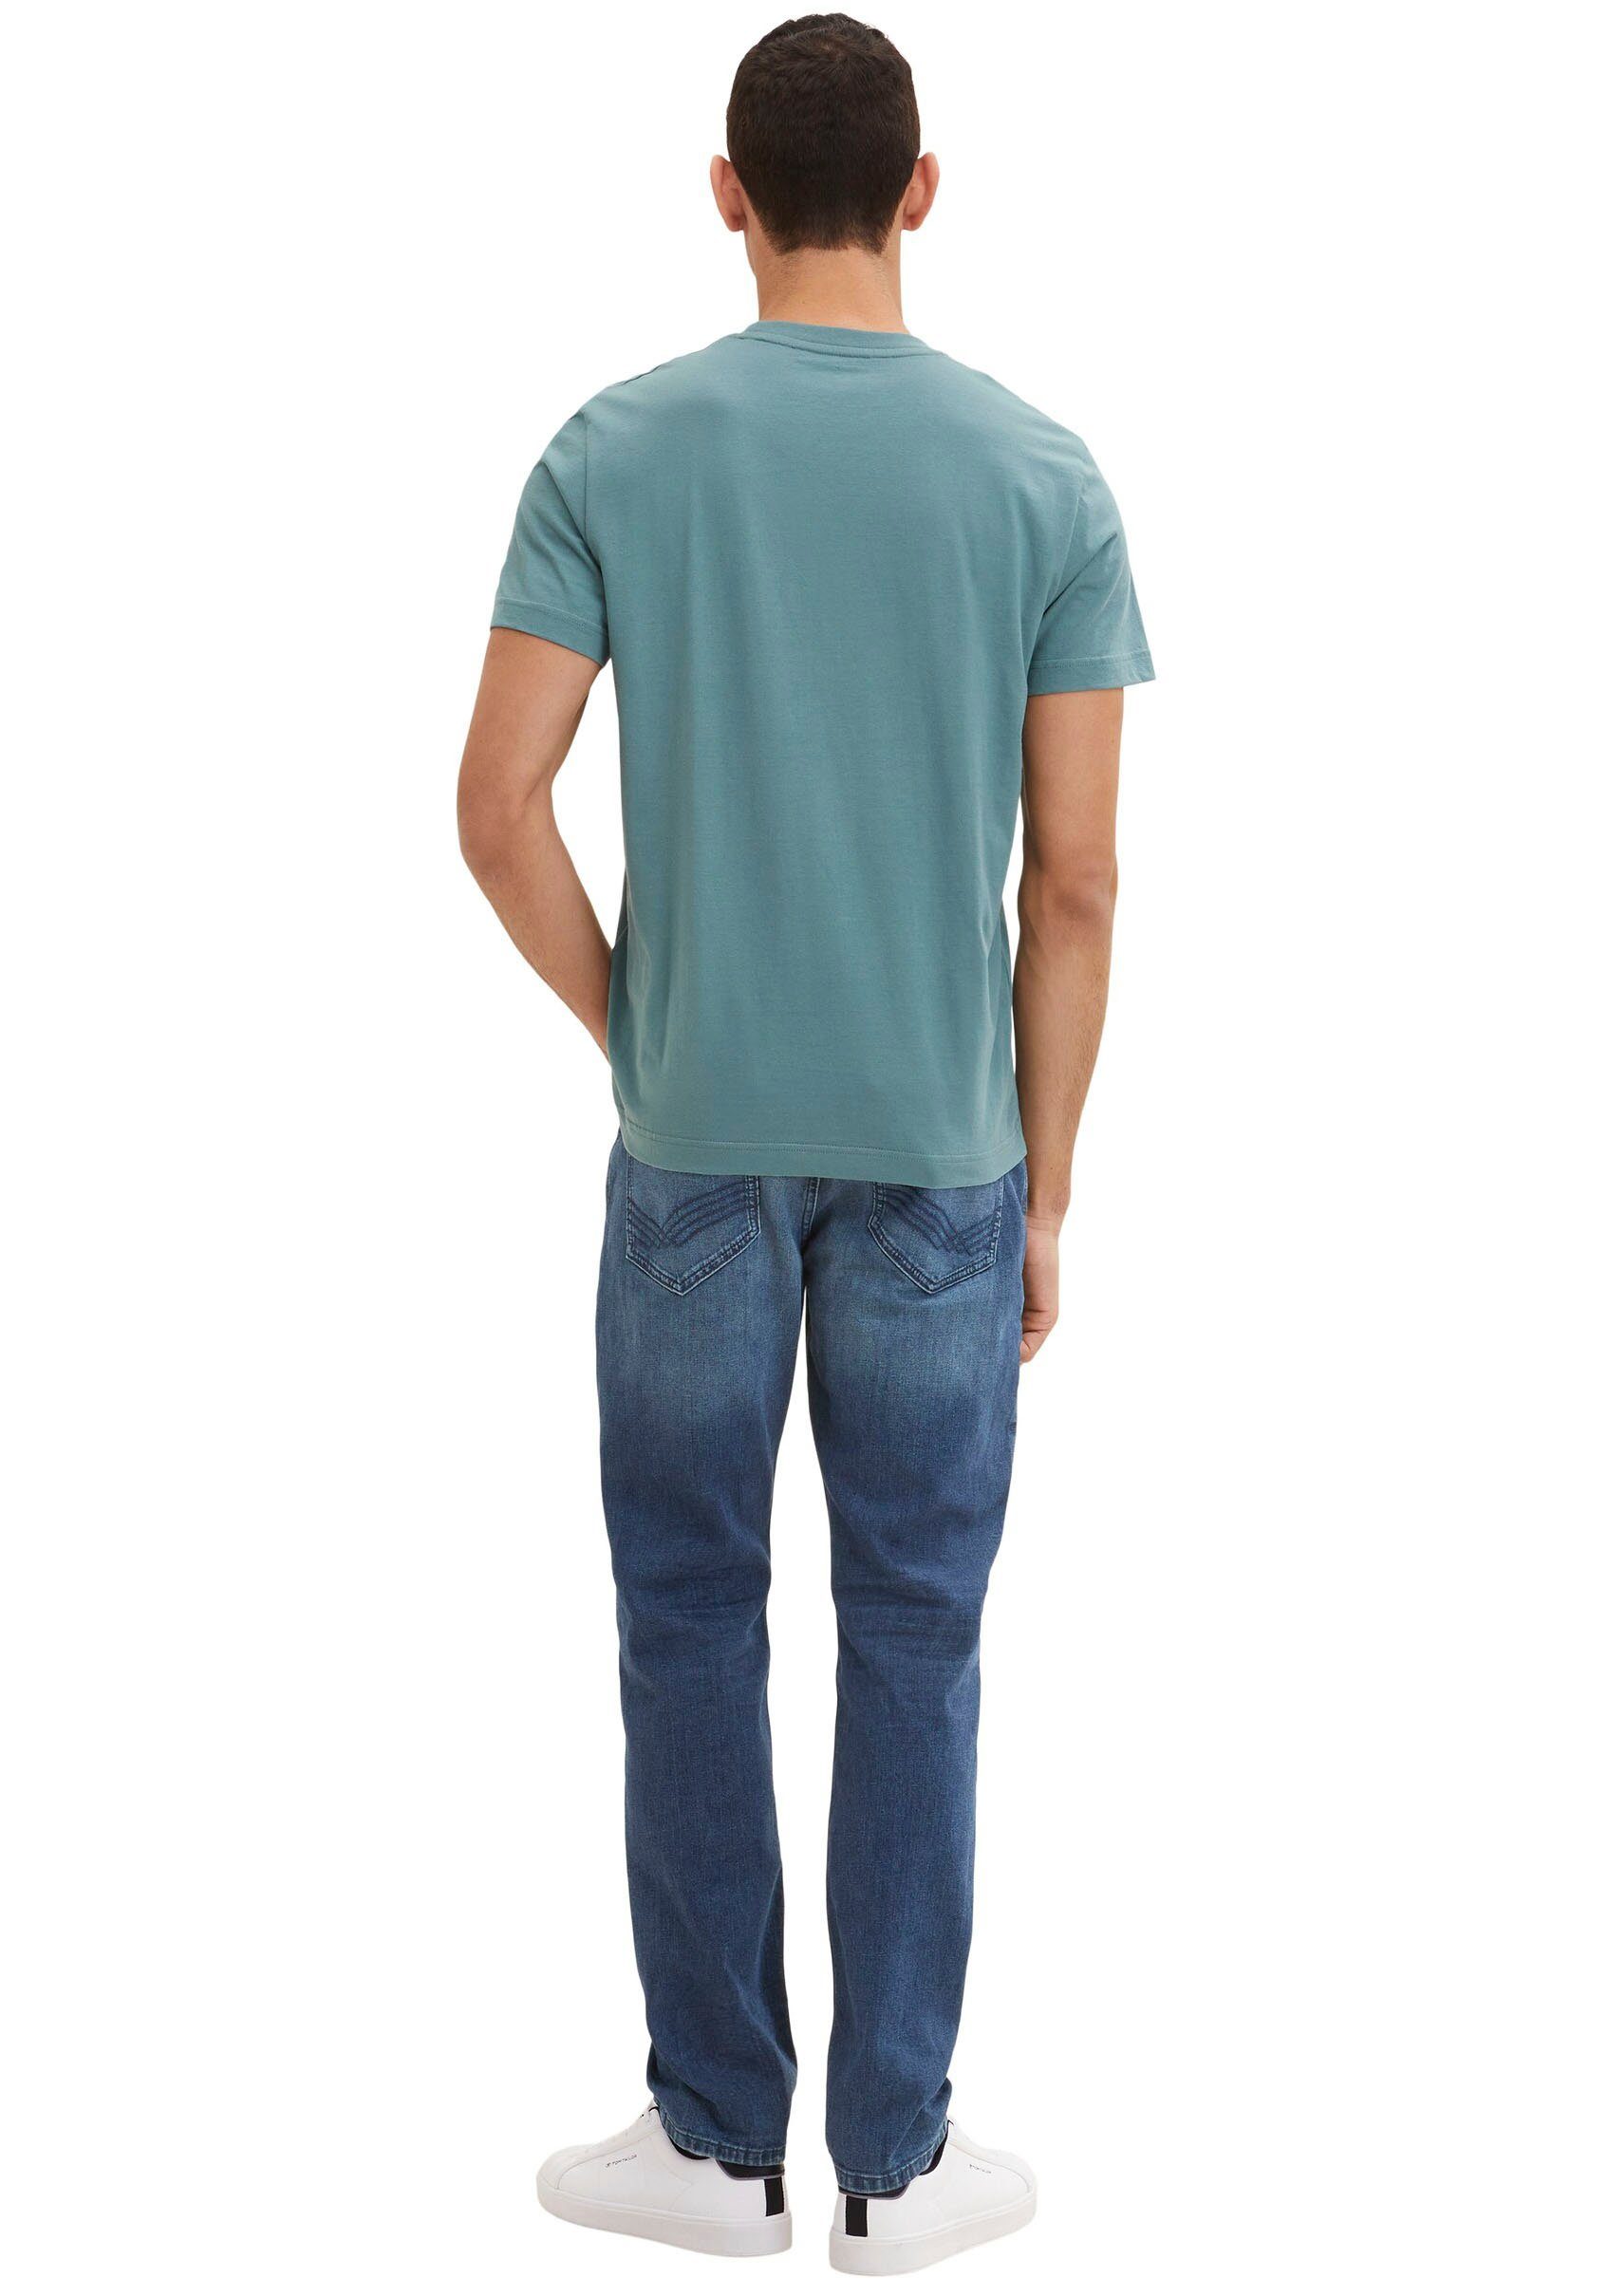 TOM TAILOR Print-Shirt T-Shirt deep Tom Tailor Frontprint bluis Herren